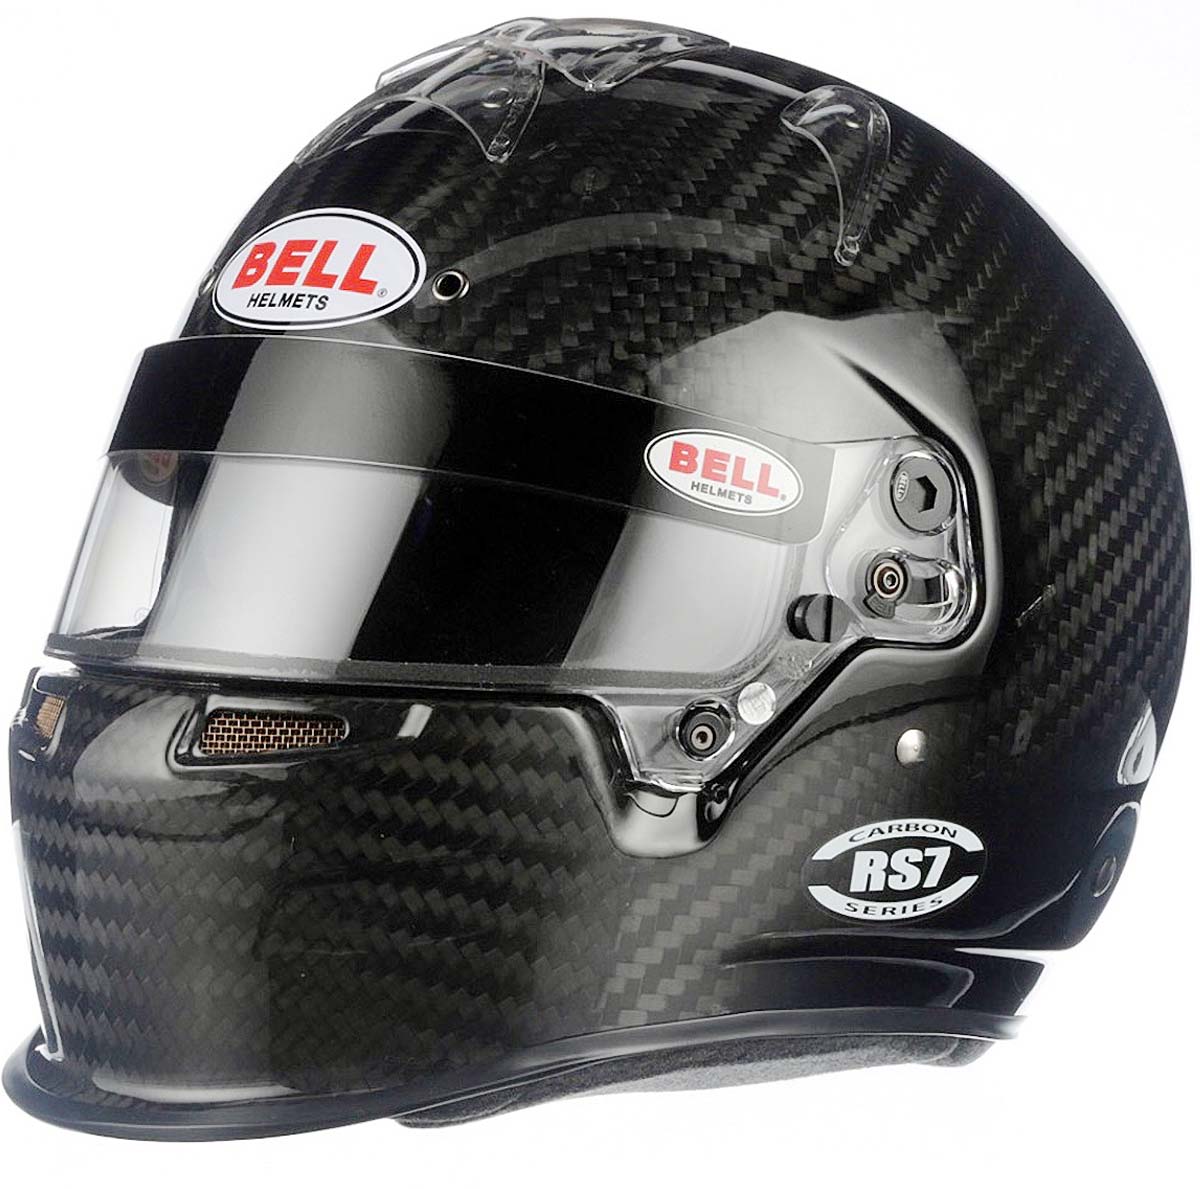 Bell RS7 Carbon Fiber Helmet left side closeup image